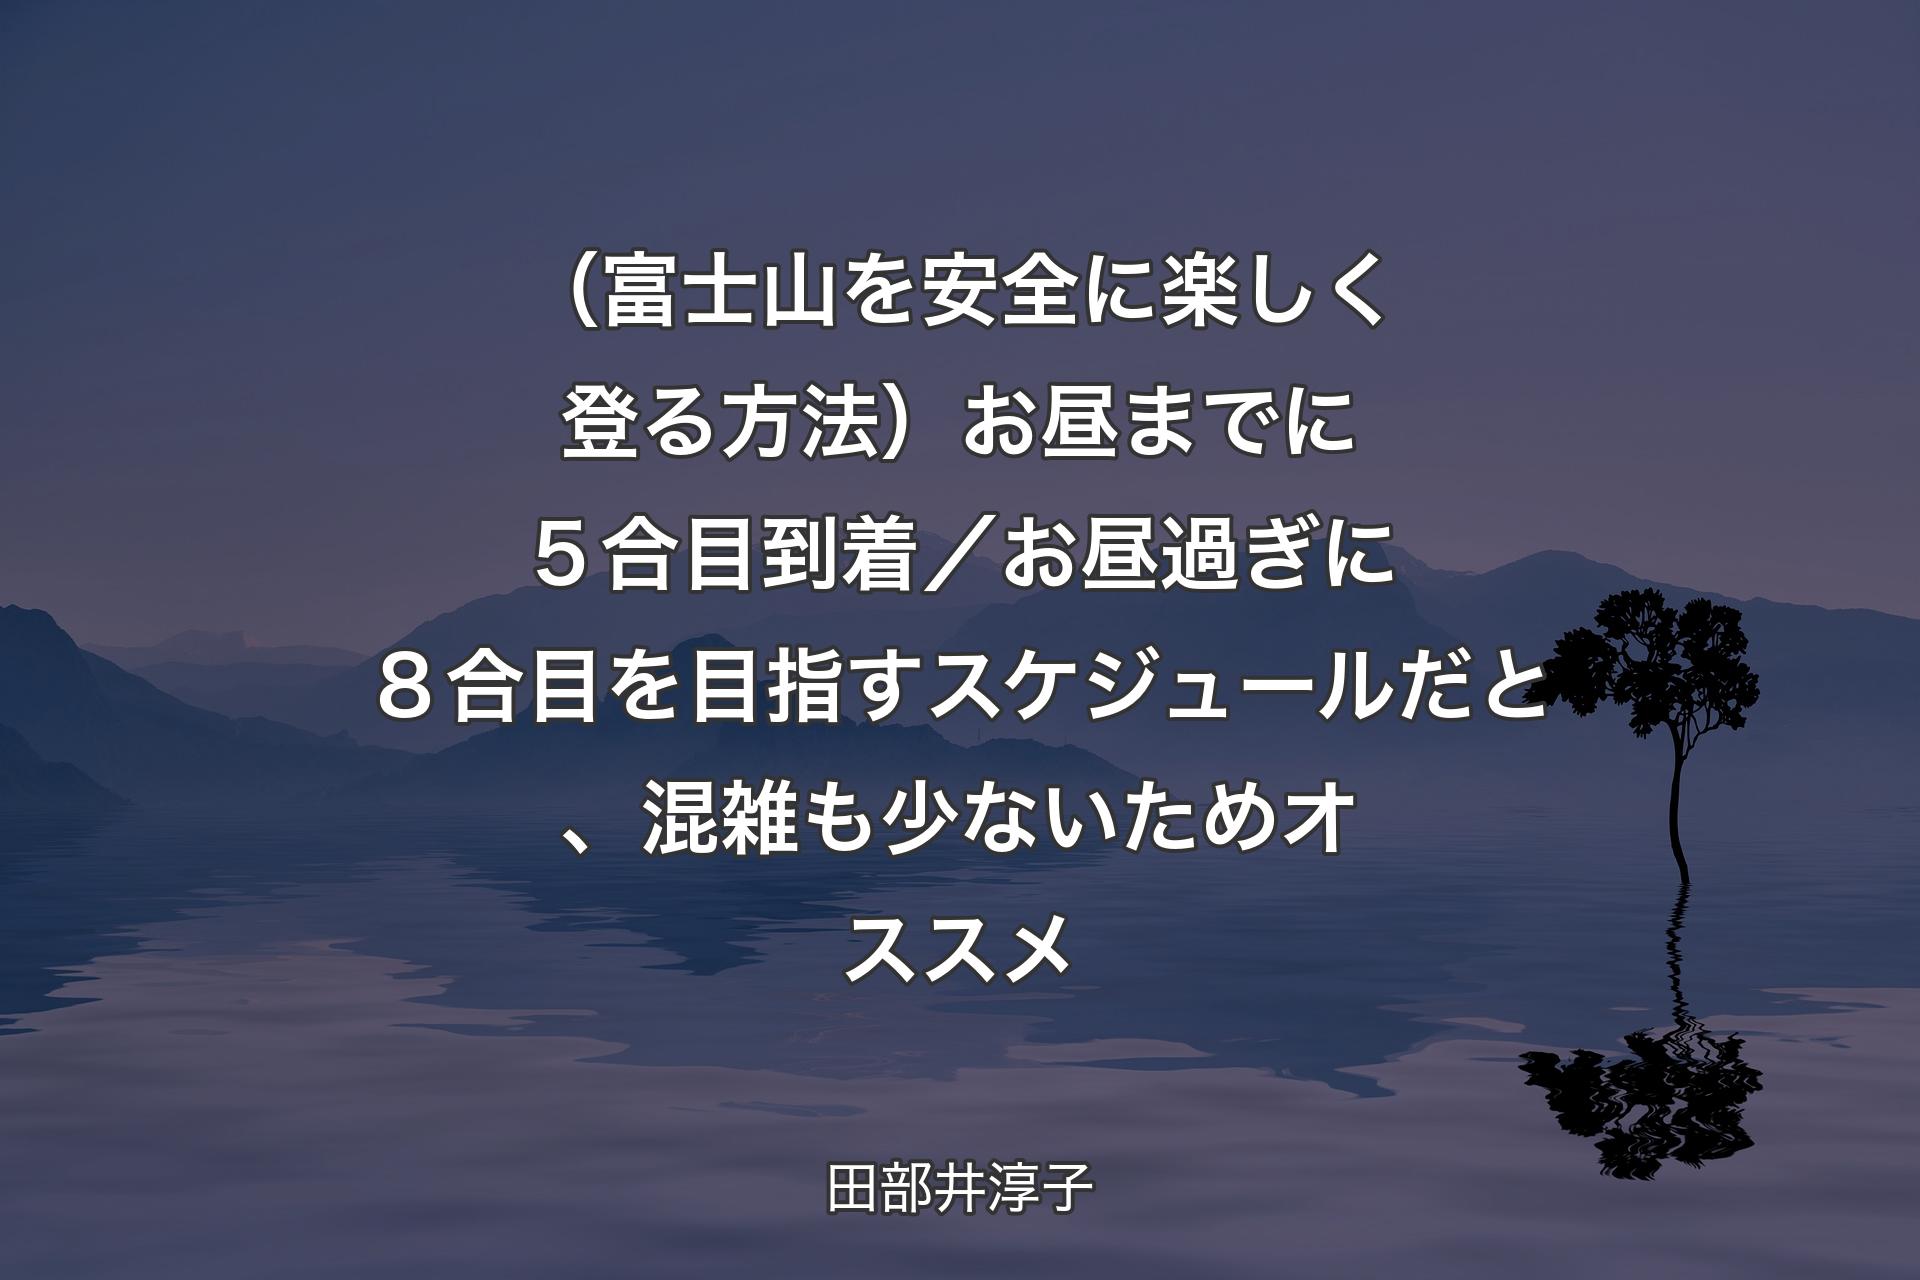 （富士山を安全に楽しく登る方法）お昼までに５合目到着／お昼過ぎに８合目を目指すスケジュールだと、混雑も少ないためオススメ - 田部井淳子